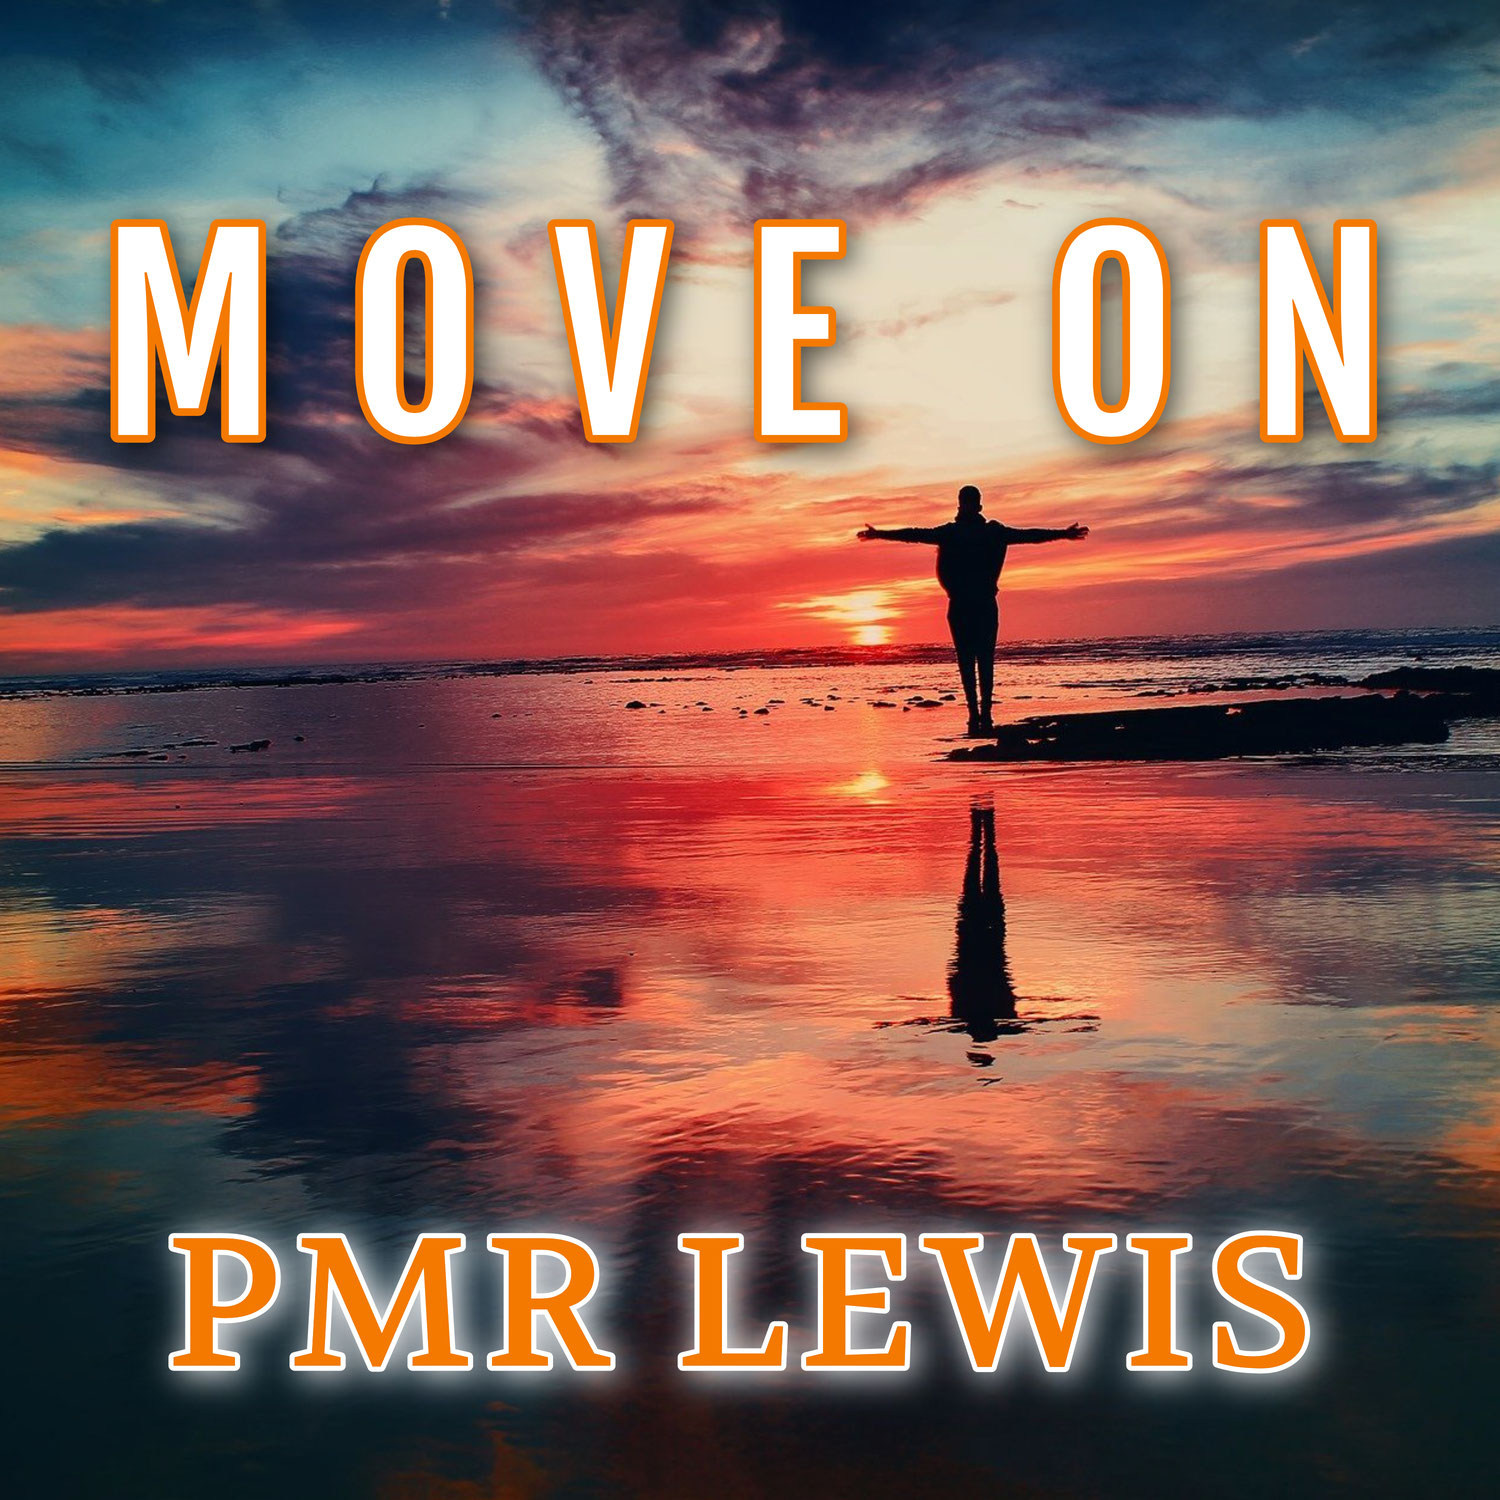 " Move on "のミュージックビデオ、本日リリースしました。